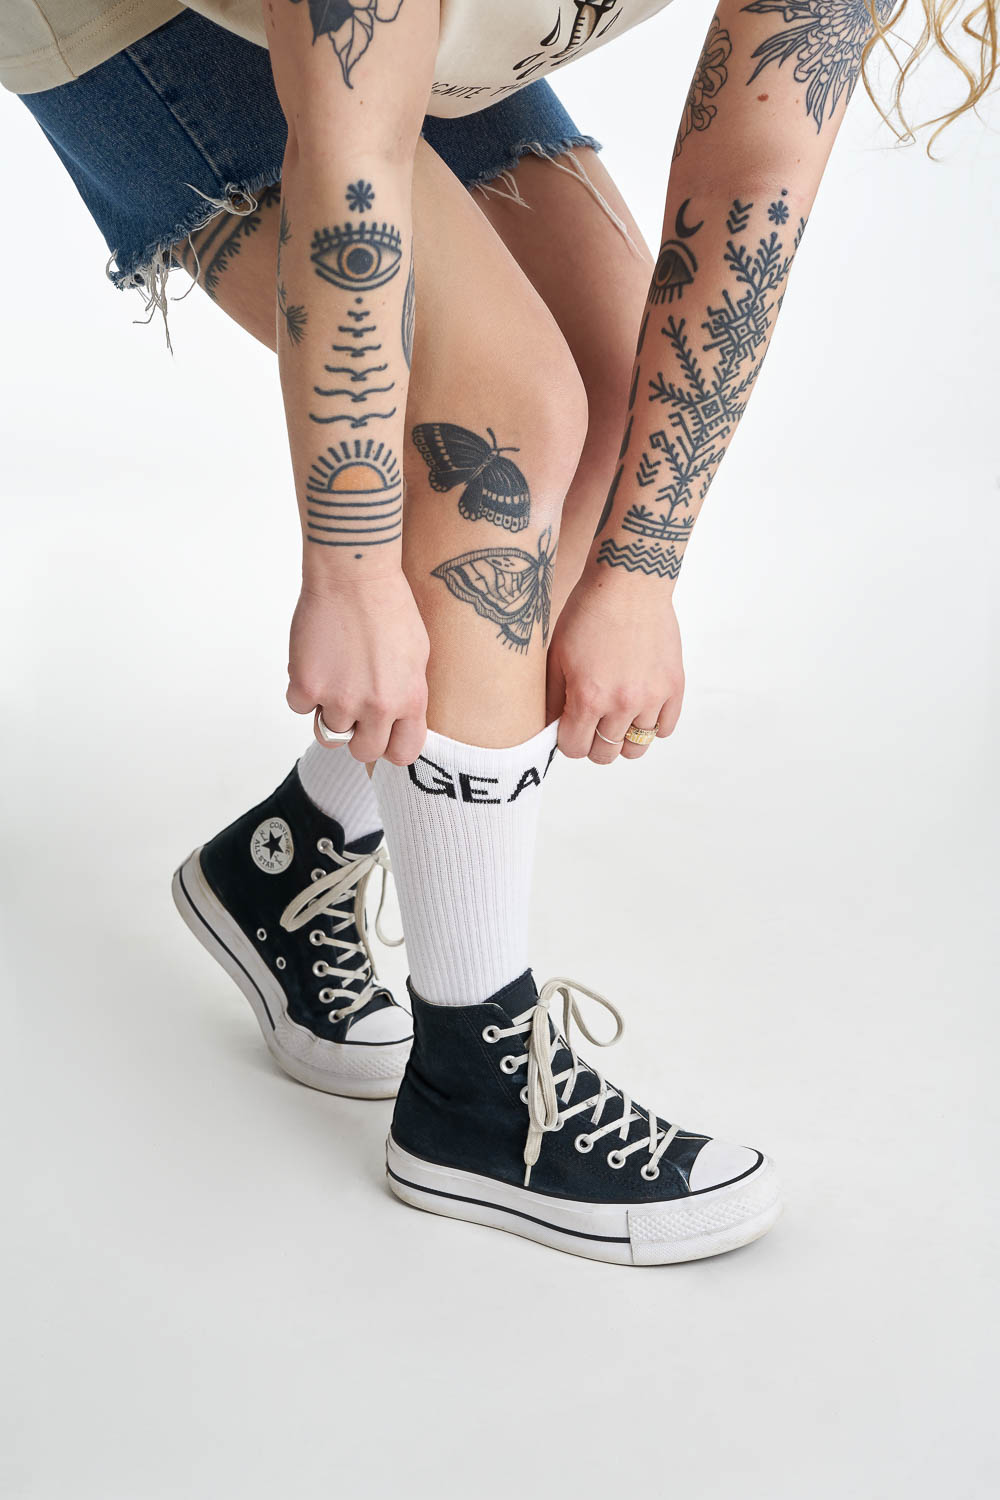 Women&#39;s legs wearing white socks with  &quot;gear&quot; motive